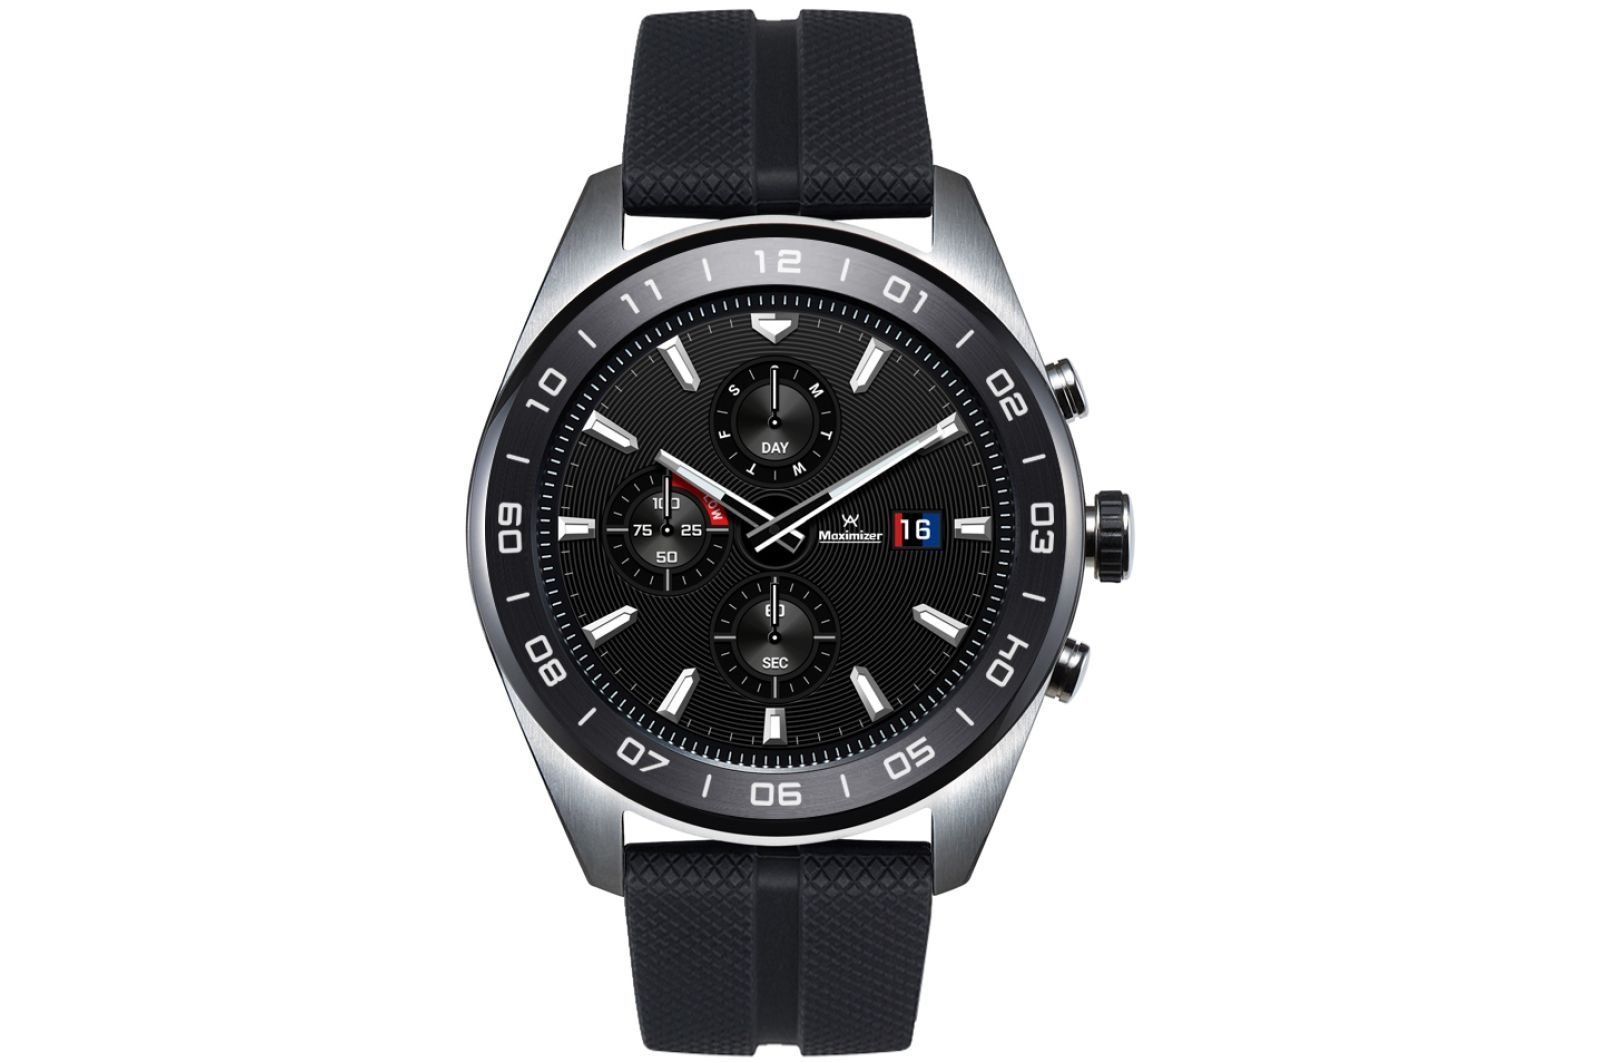 Smart klocka LG Watch W7 - fördelar och nackdelar